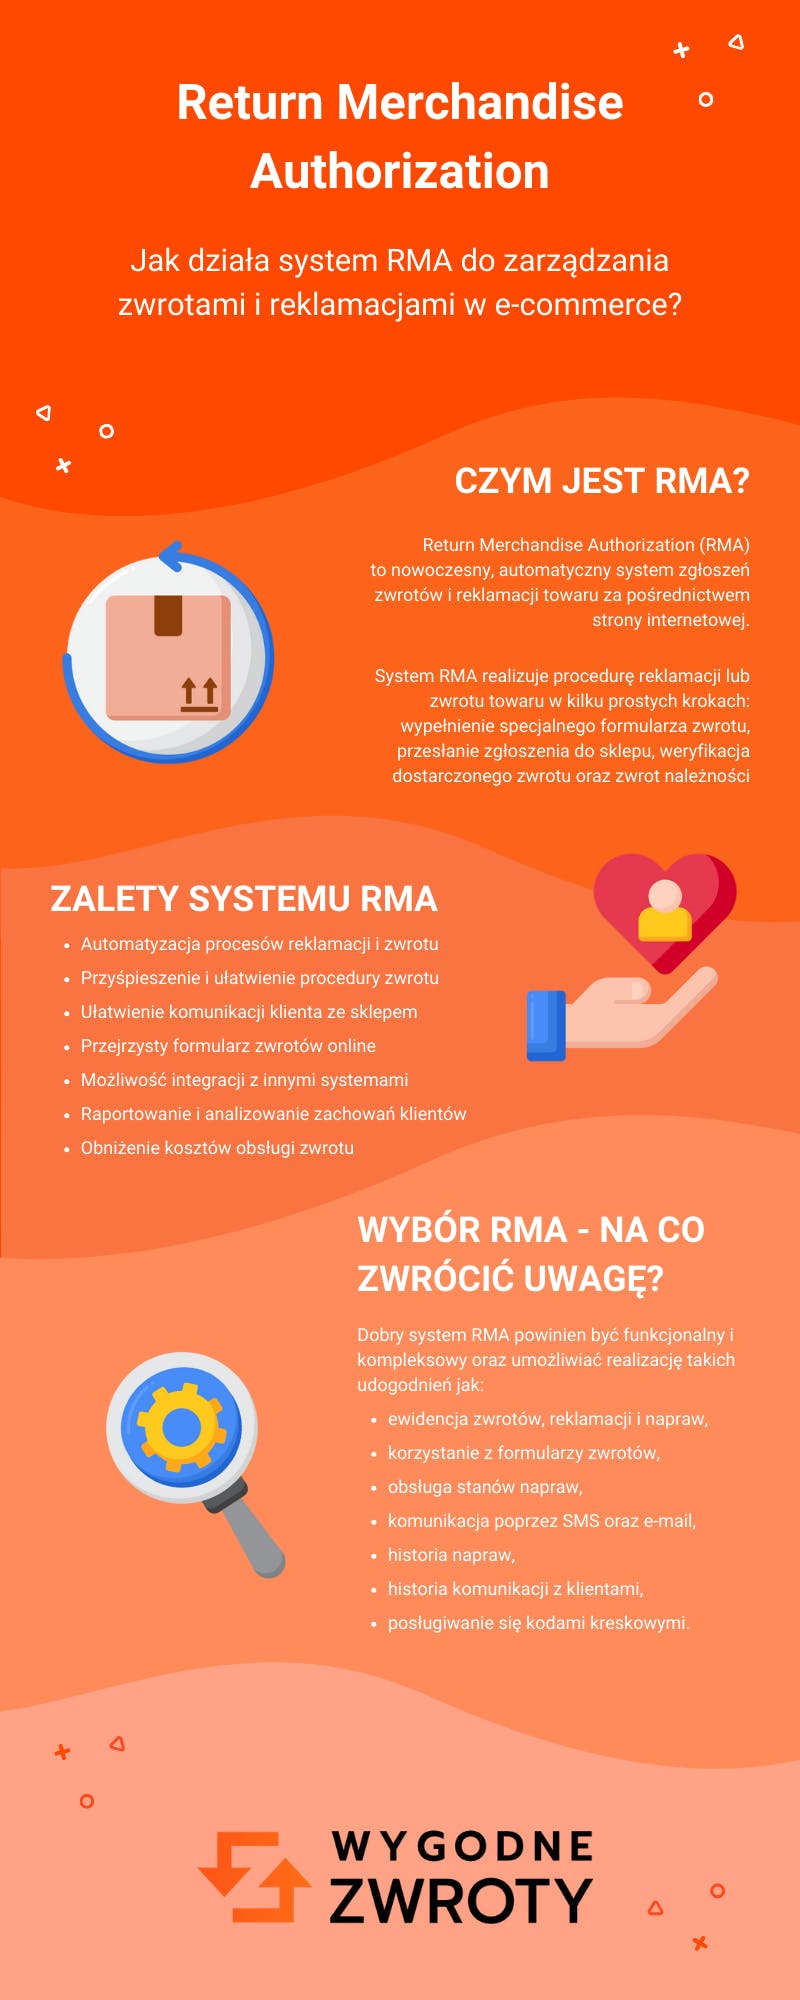 Return Merchandise Authorization – jak działa system RMA (infografika)